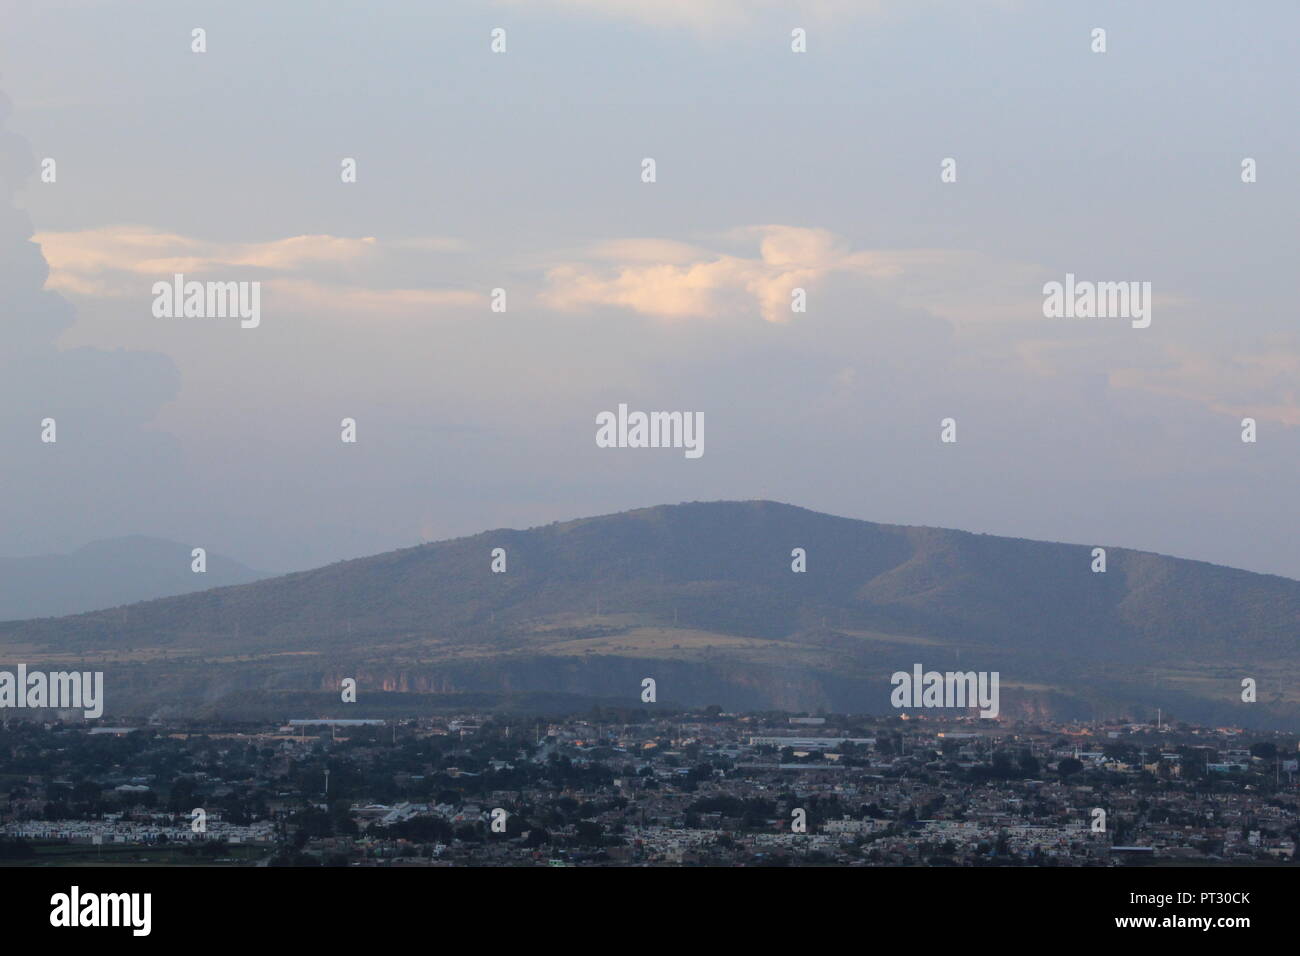 Foto tomada en El Cerro de la Reina en el Municipio de Tonala Jalisco Mexico en Donde se aprecia una vista Panoramica de la Ciudad de Guadalajara Jal Stockfoto